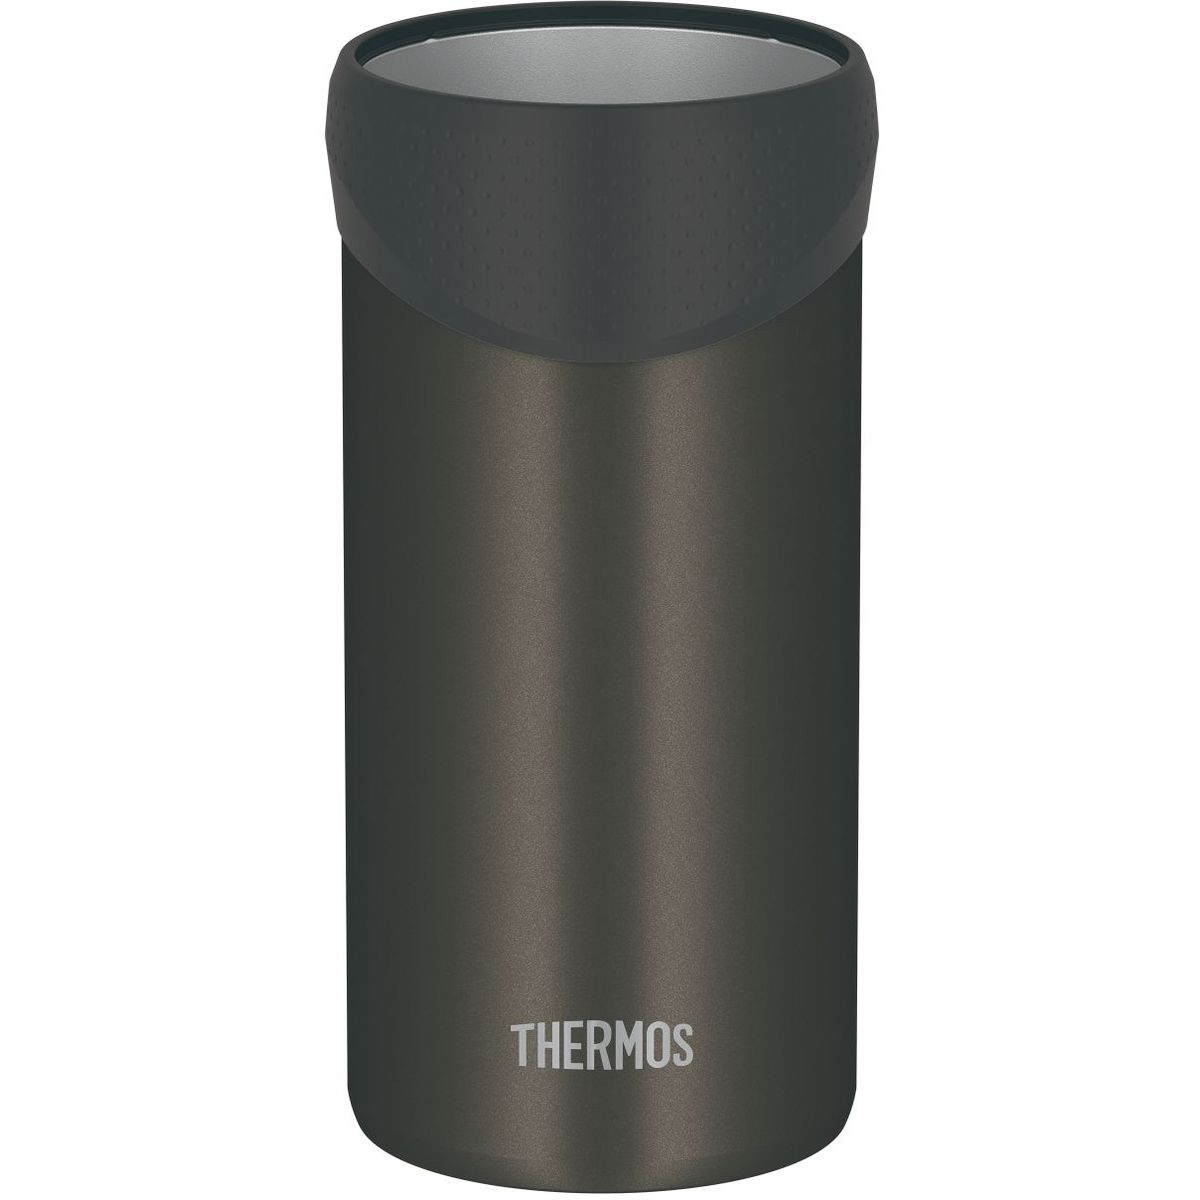 THERMOS 保冷缶ホルダー ダークブラウン 350・500mL缶対応 真空断熱 保温保冷